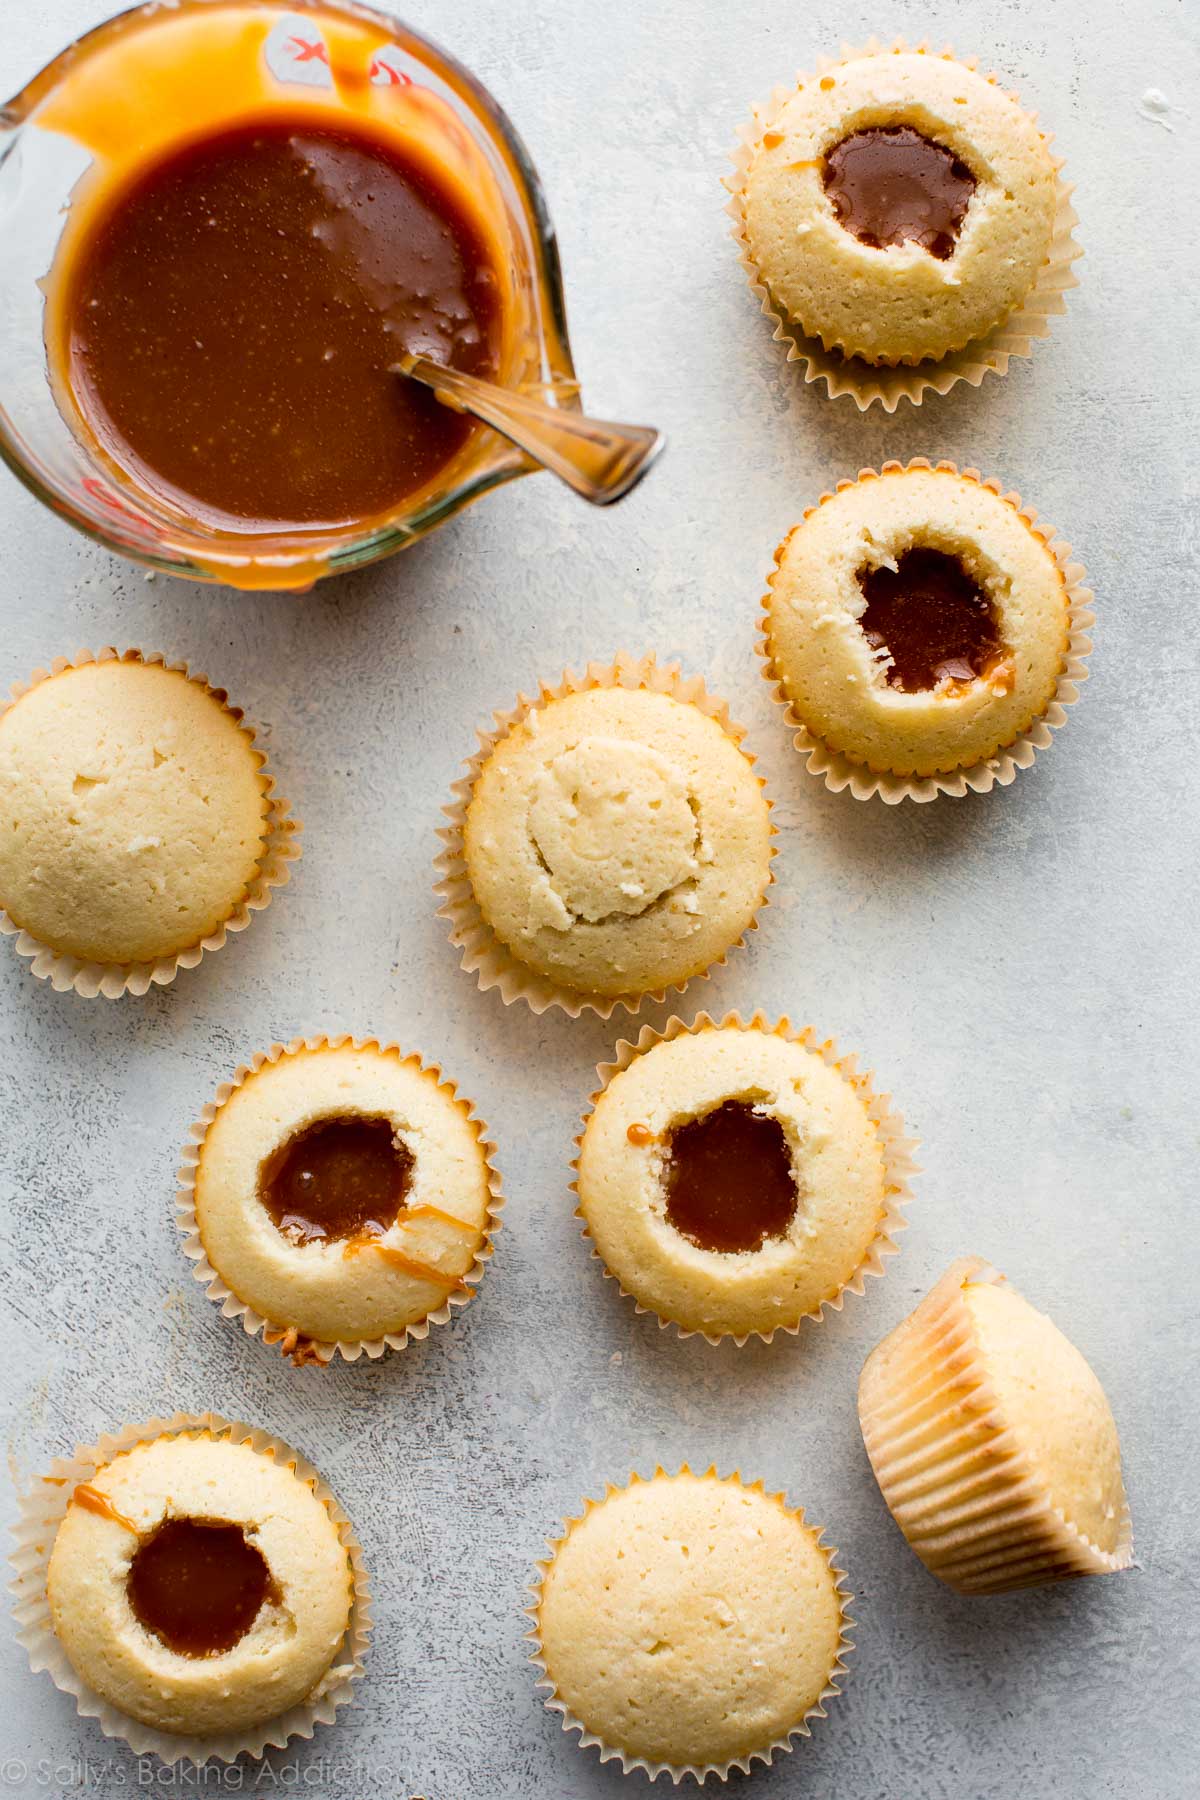 Cupcakes à la noix de coco au caramel salé sur sallysbakingaddiction.com